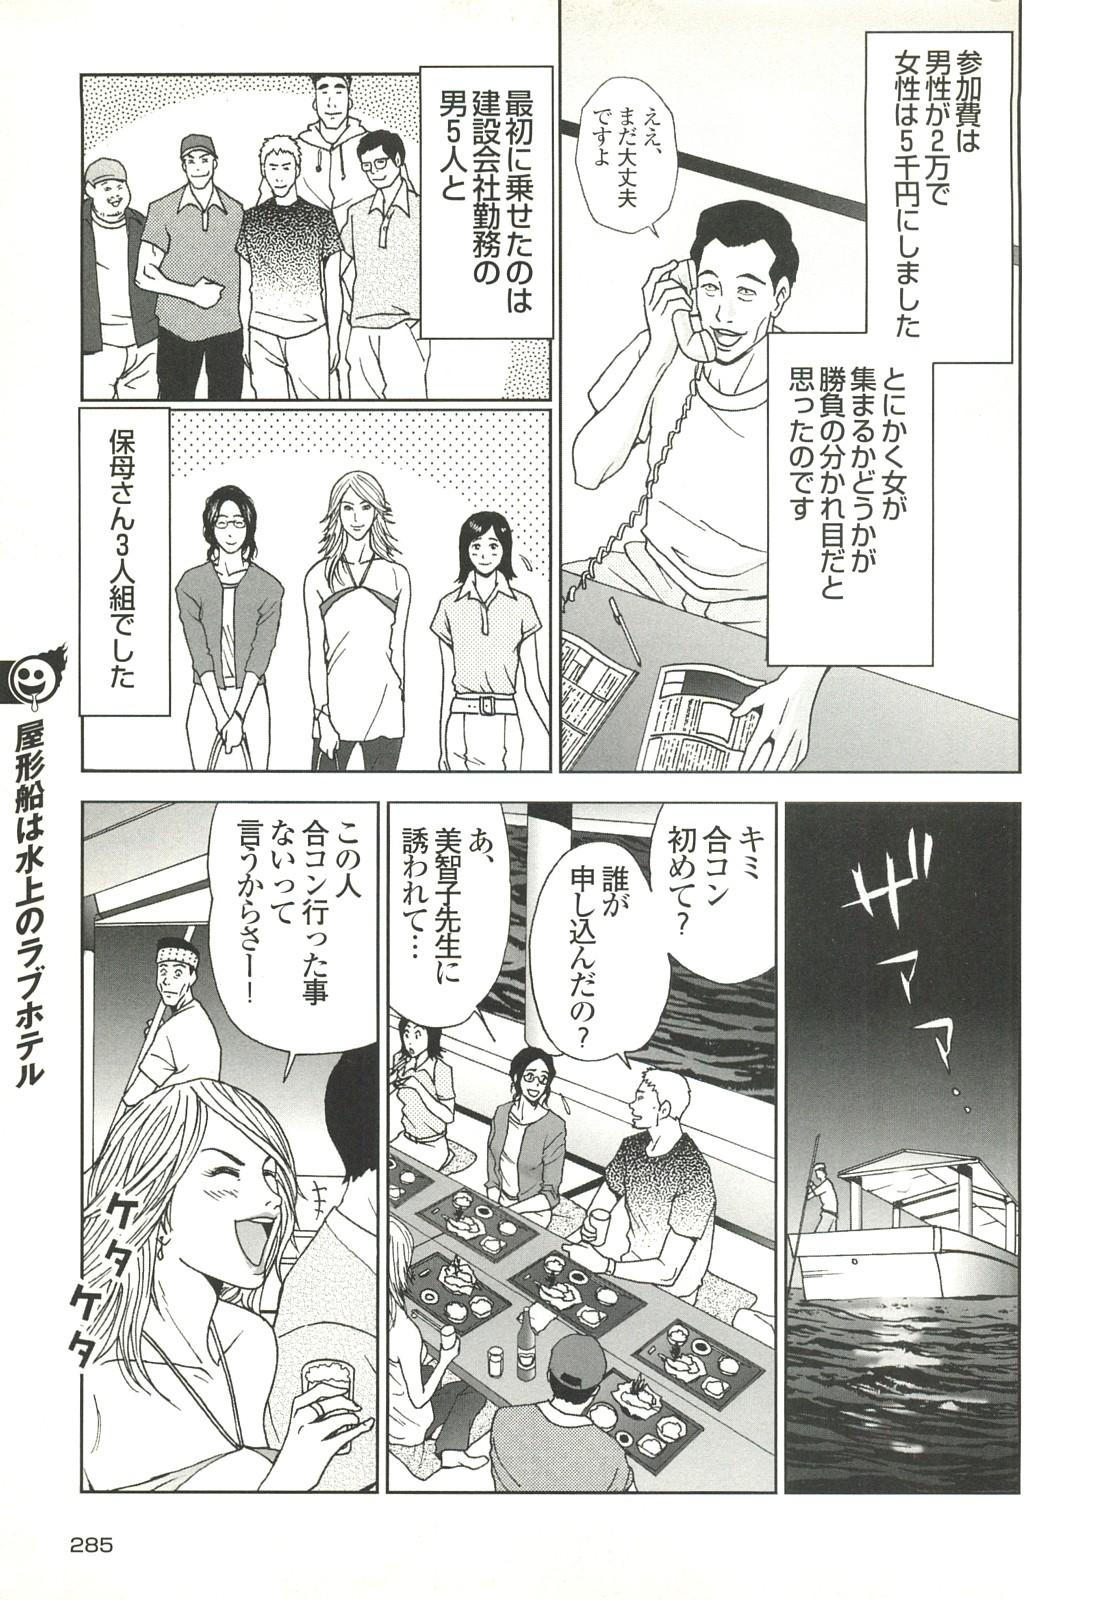 コミック裏モノJAPAN Vol.18 今井のりたつスペシャル号 284